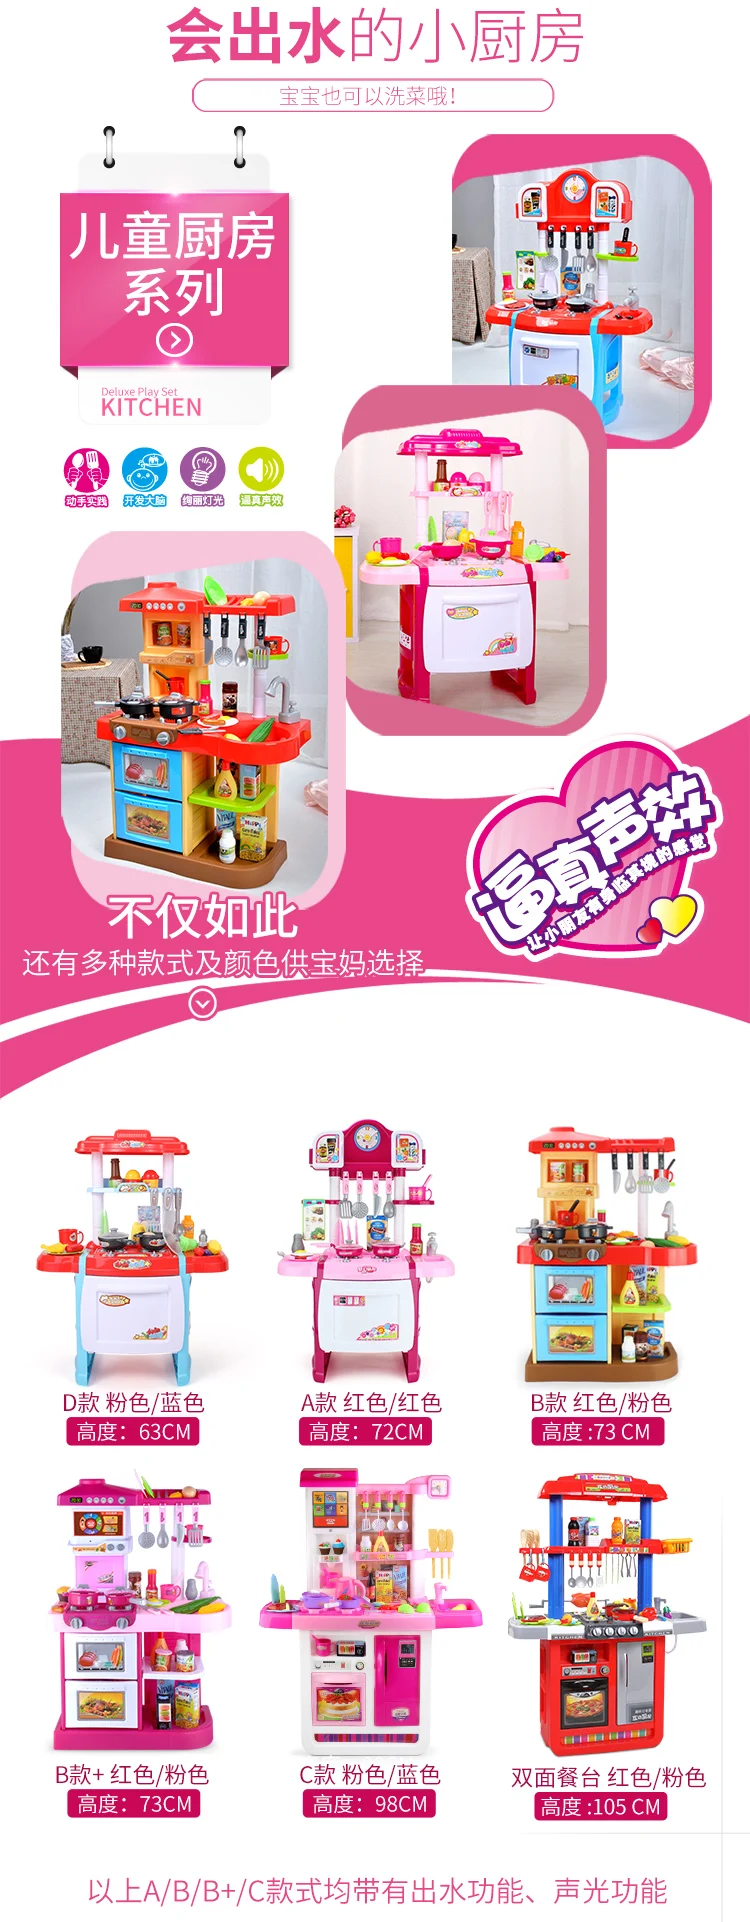 Игровой домик Модель кухонные принадлежности детский набор игрушек Северная Америка материк Китай Приготовления детей девочек мальчик маленький